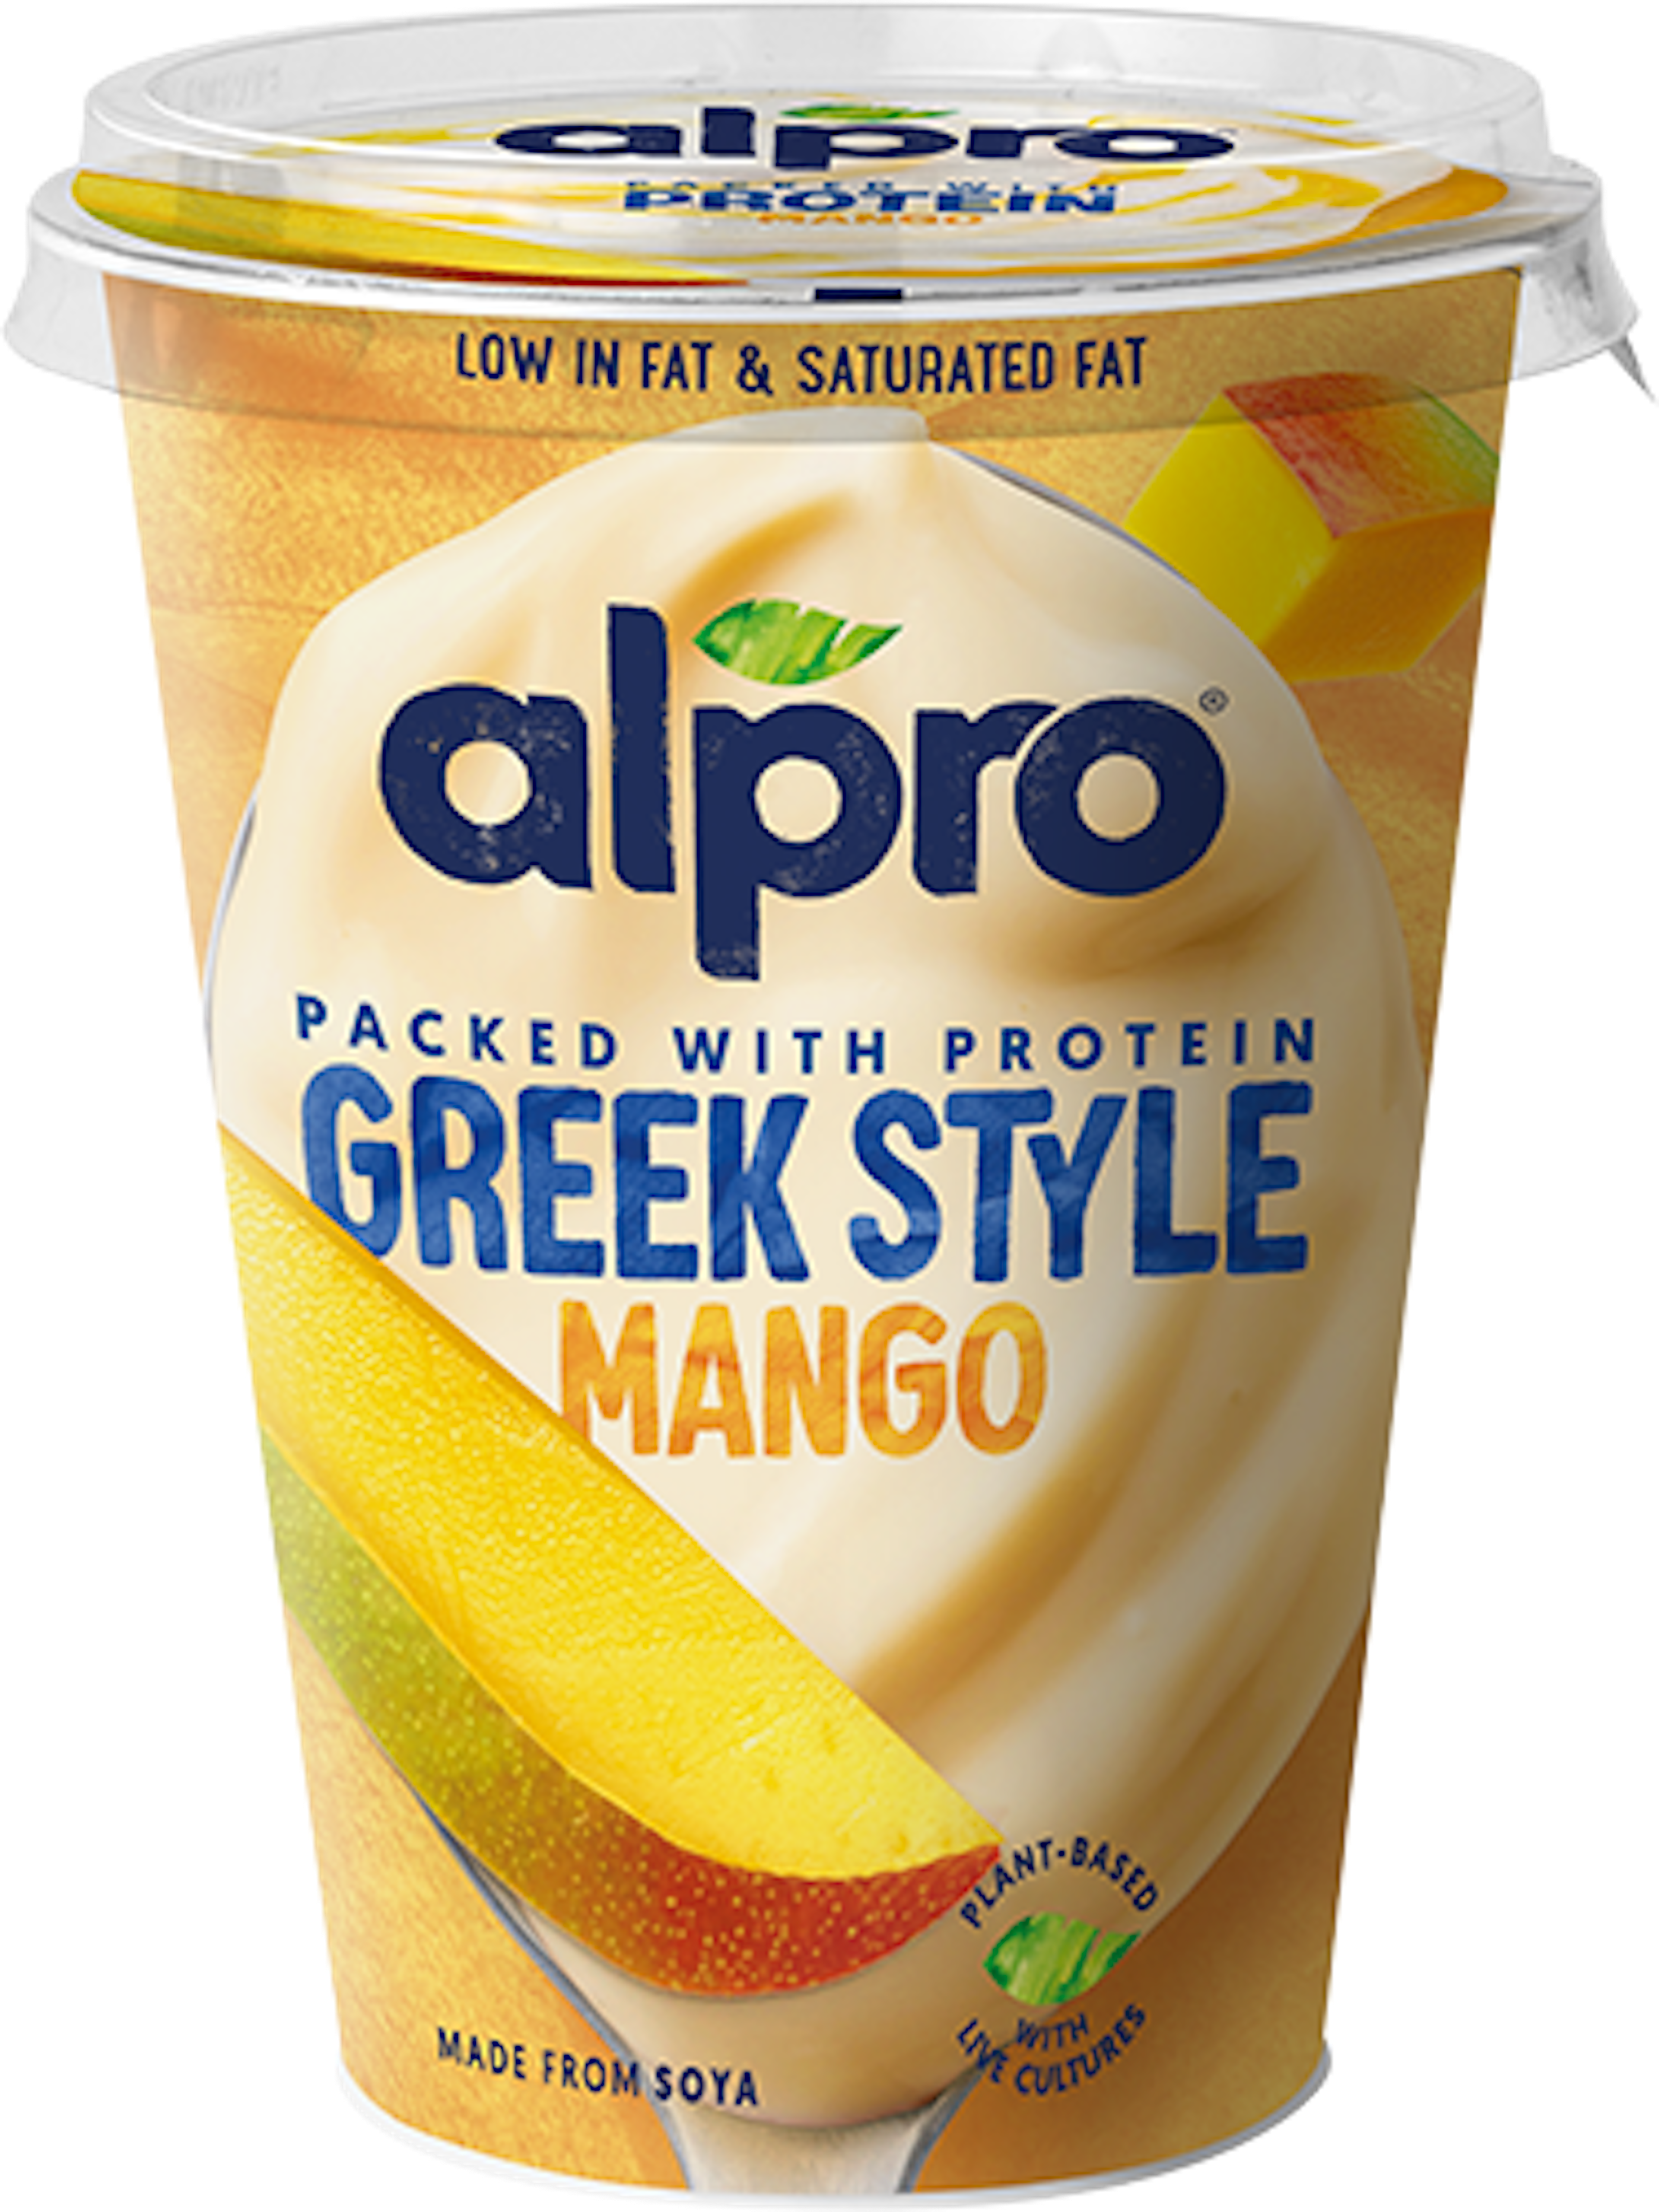 Jogurta alternatīva ar mango garšu, Grieķu